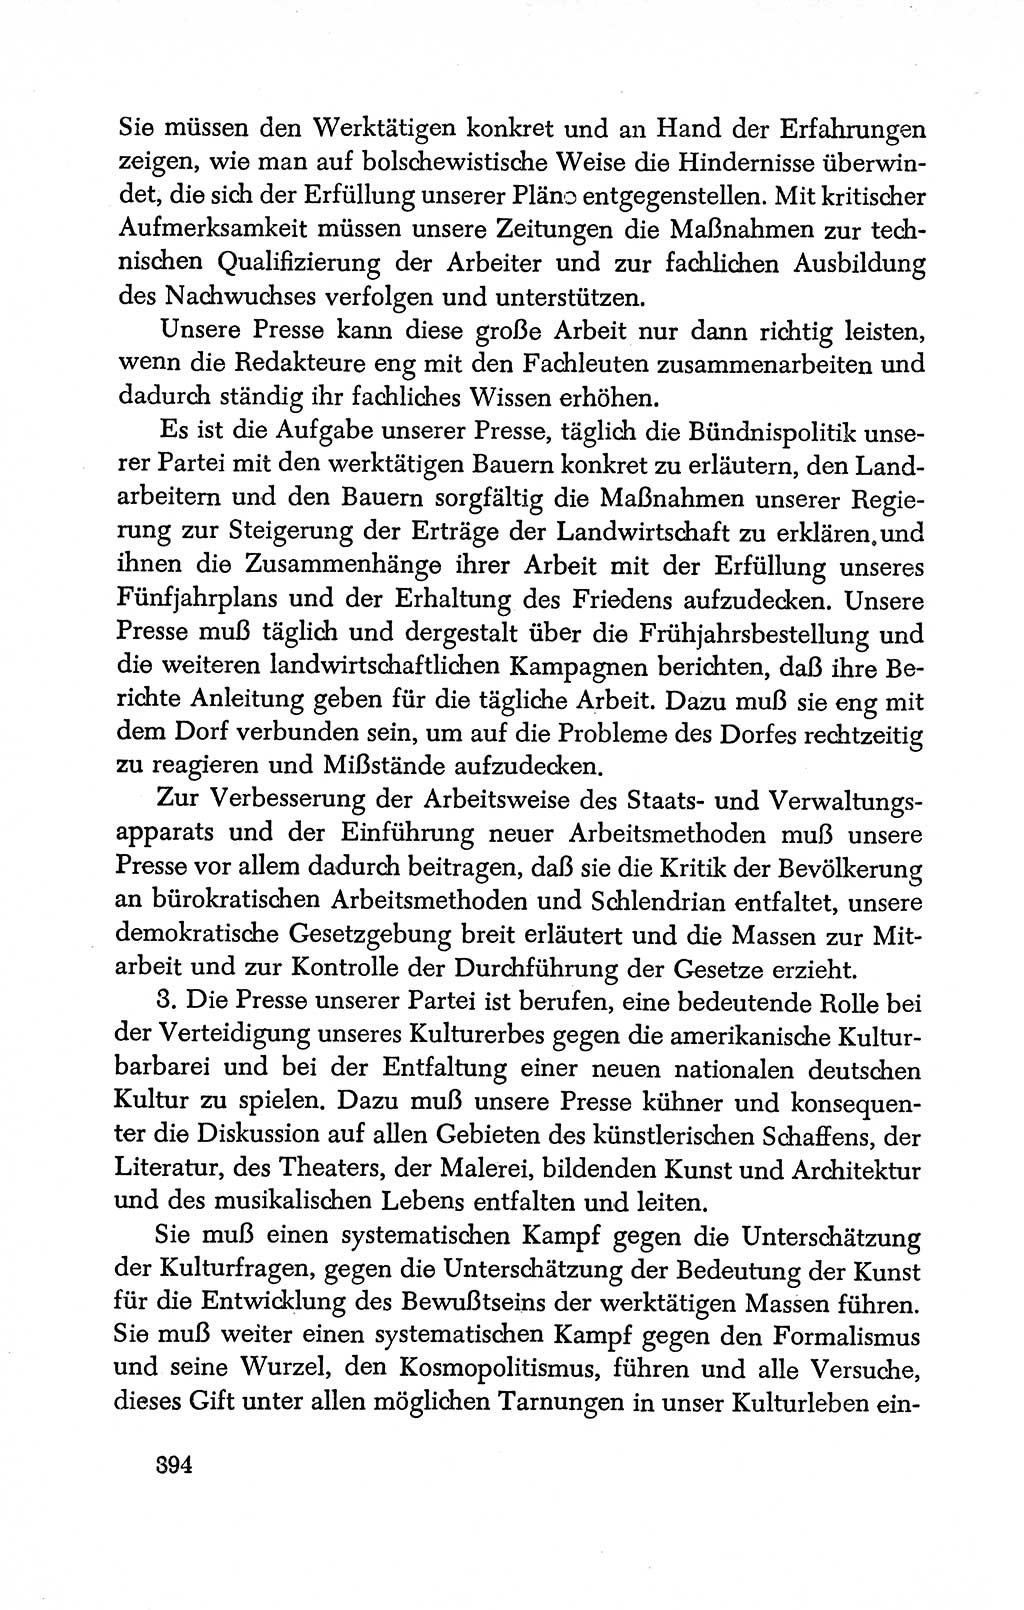 Dokumente der Sozialistischen Einheitspartei Deutschlands (SED) [Deutsche Demokratische Republik (DDR)] 1950-1952, Seite 394 (Dok. SED DDR 1950-1952, S. 394)